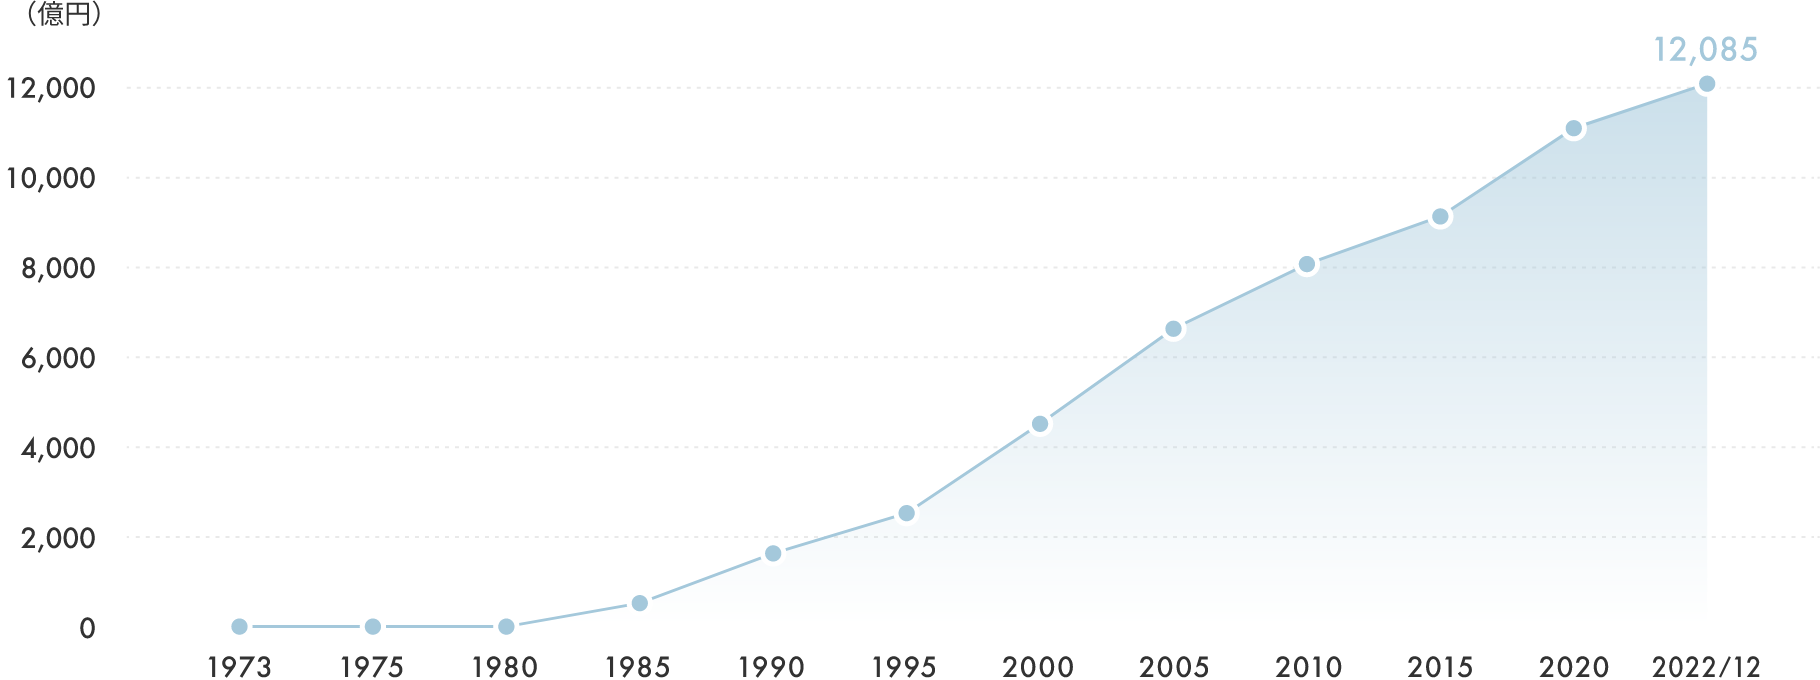 折れ線グラフ:1973年から、2022年12月までに、12,085億円に増加